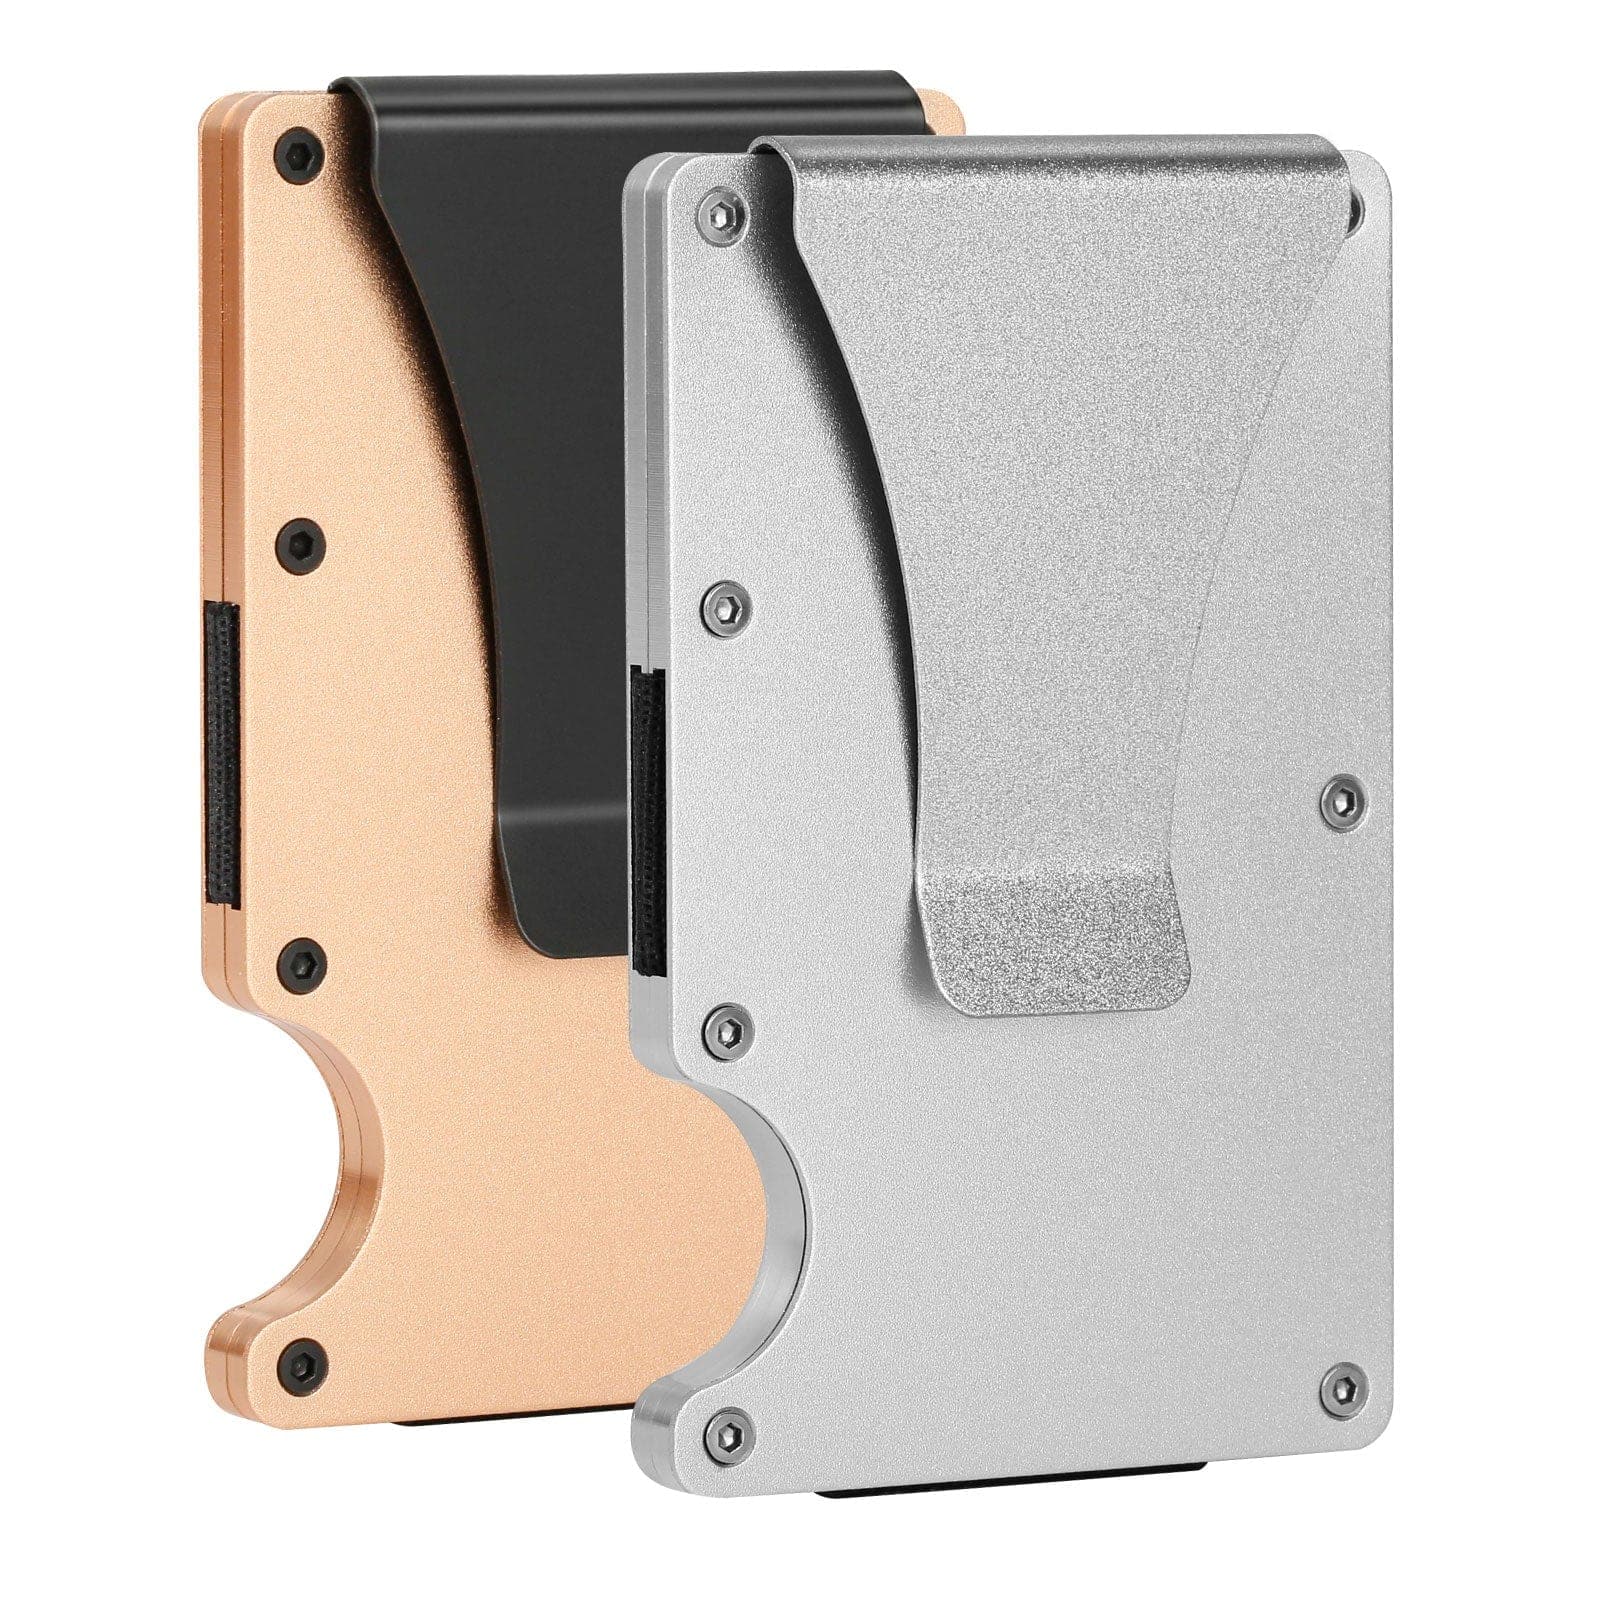 2 Packs Metal Wallet Card Holder